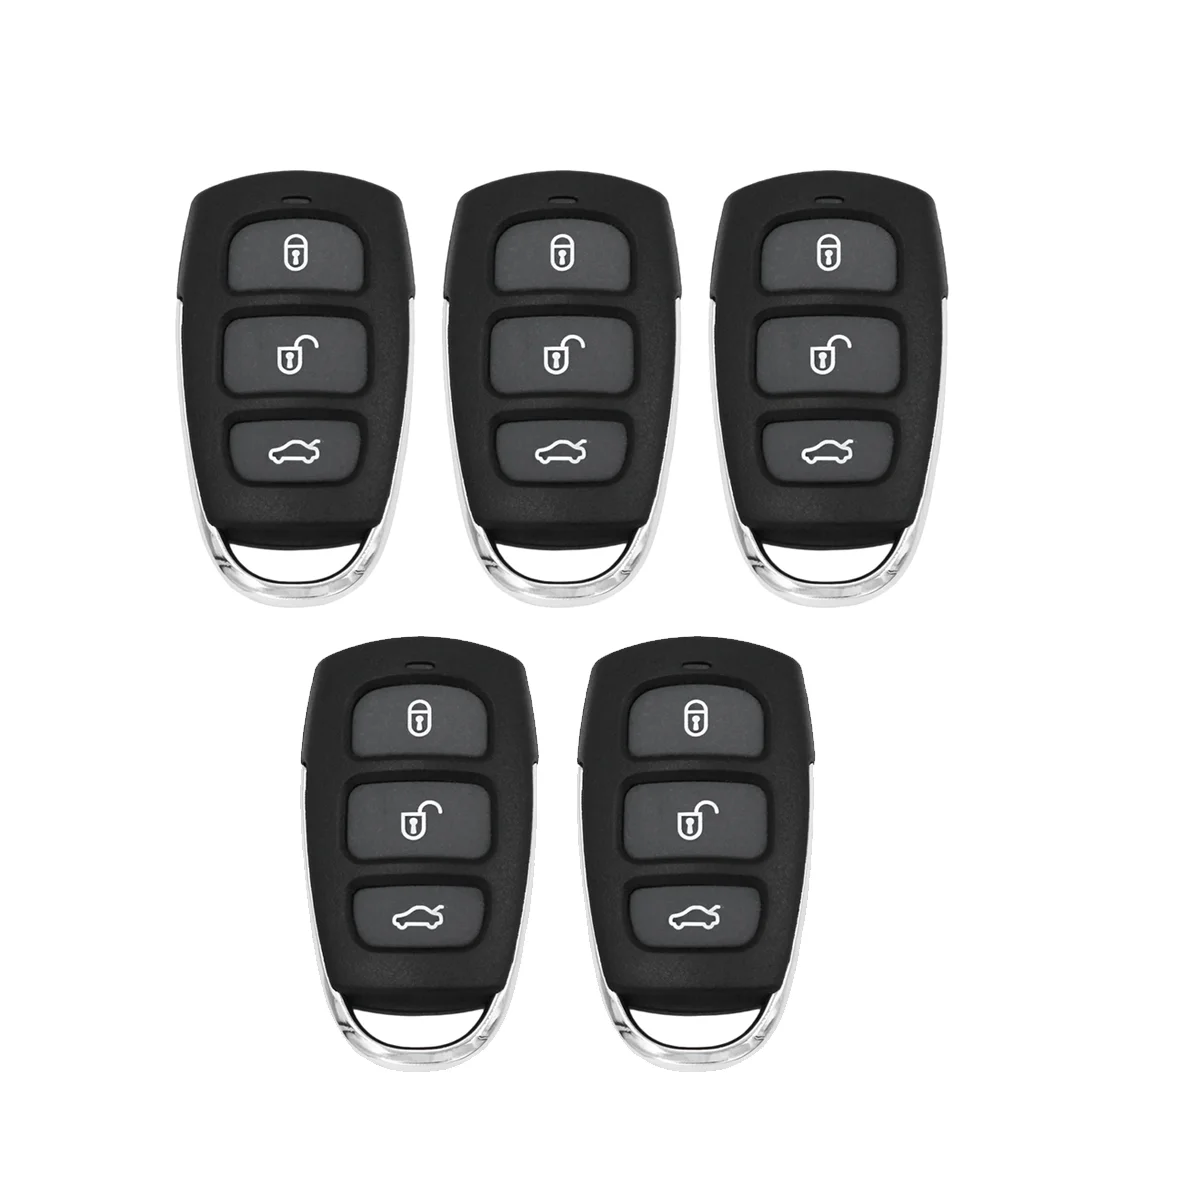 

Универсальный пульт дистанционного управления B20 3 + 1 4 кнопки B-Series KD для KD900 KD900 + URG200, Hyundai Kia, 5 шт.